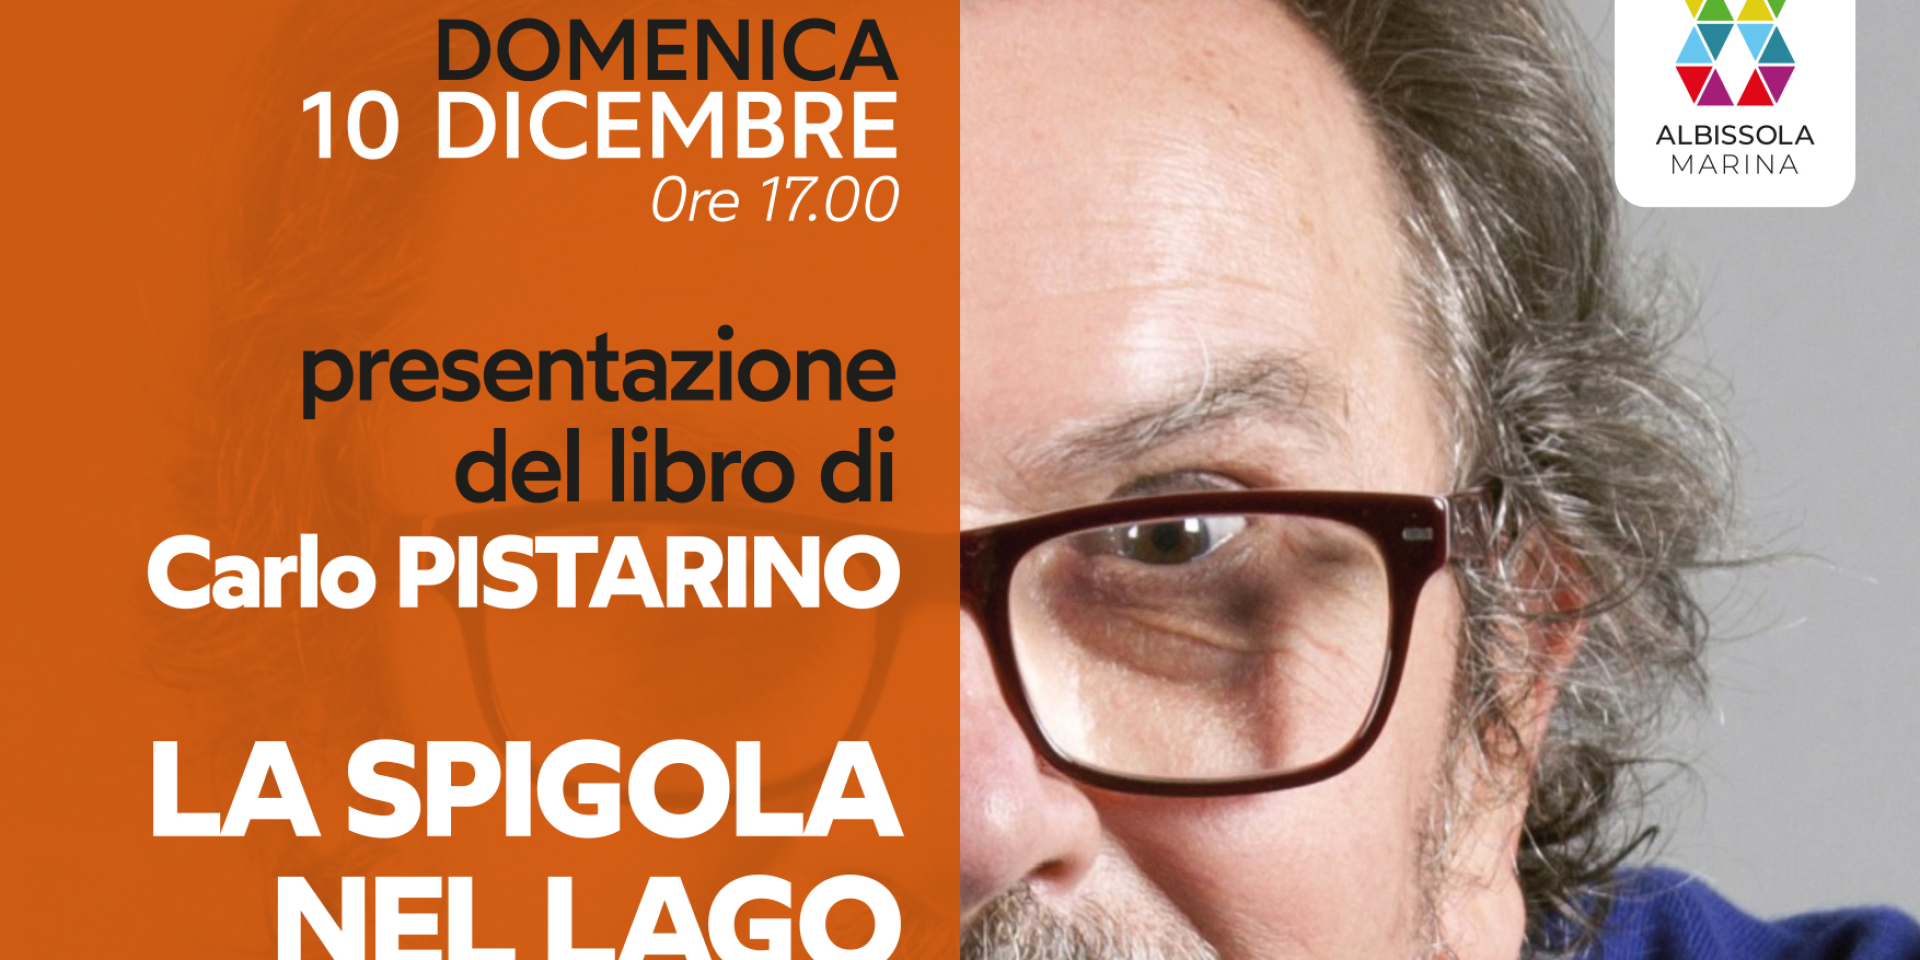 Presentazione libro di Carlo Pistarino - domenica 10 dicembre